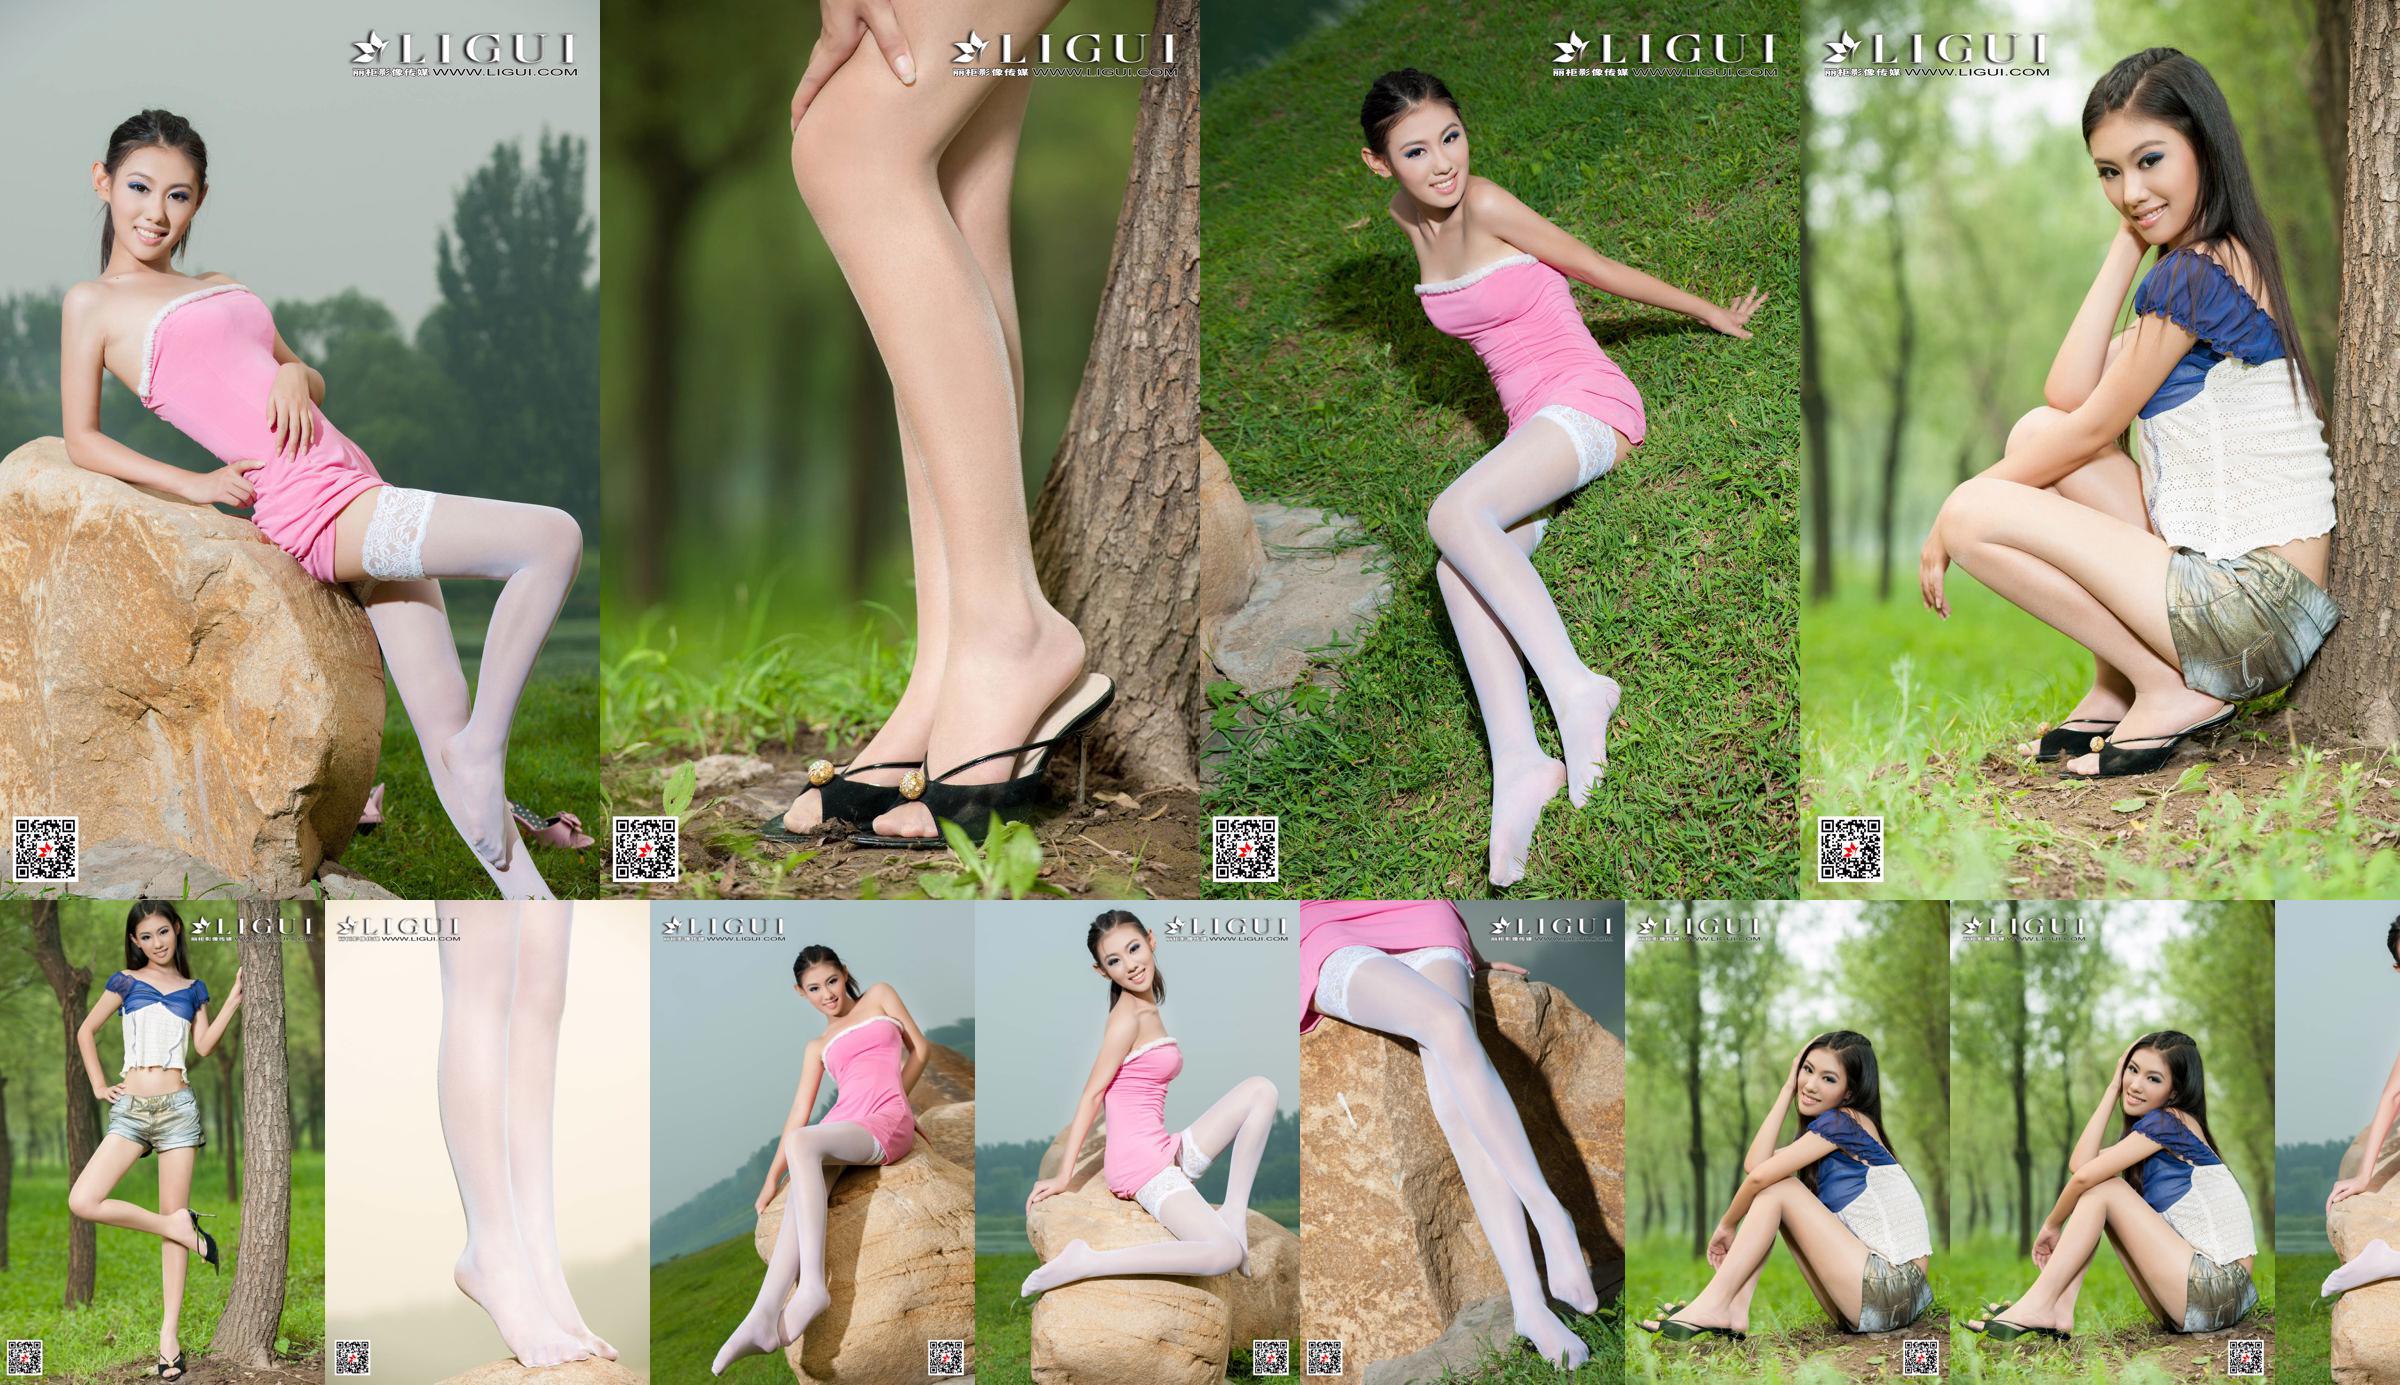 [丽柜 Ligui] นางแบบ Wei Ling "Long Leg Girl" ขาสวย No.588b60 หน้า 4